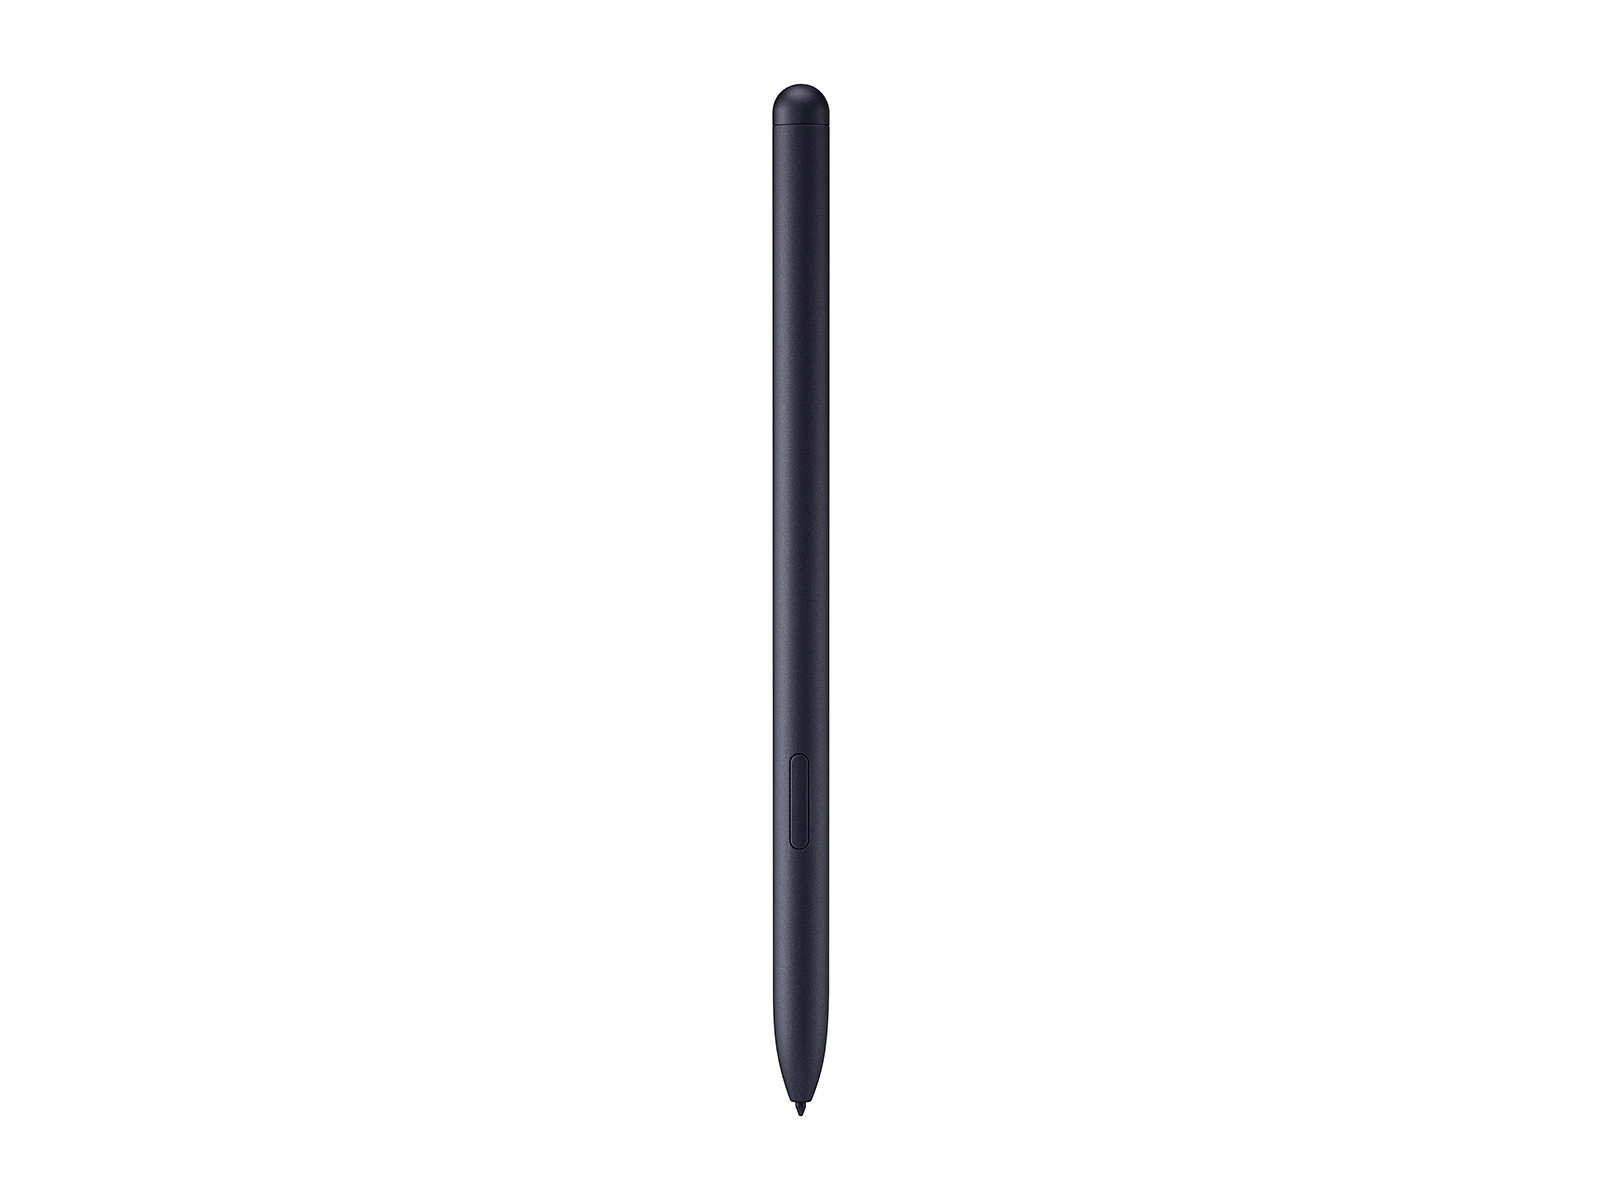 Galaxy Tab S7, 512GB, Mystic Black Tablets - SM-T870NZKFXAR